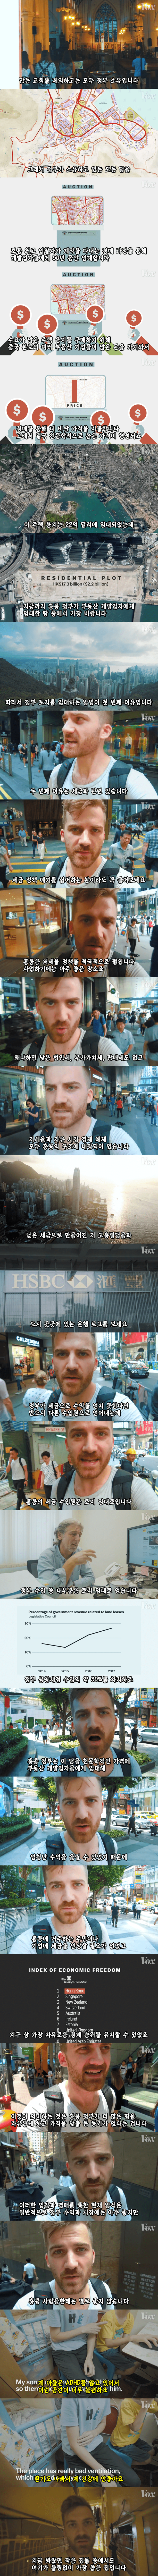 극악무도한 홍콩 집값